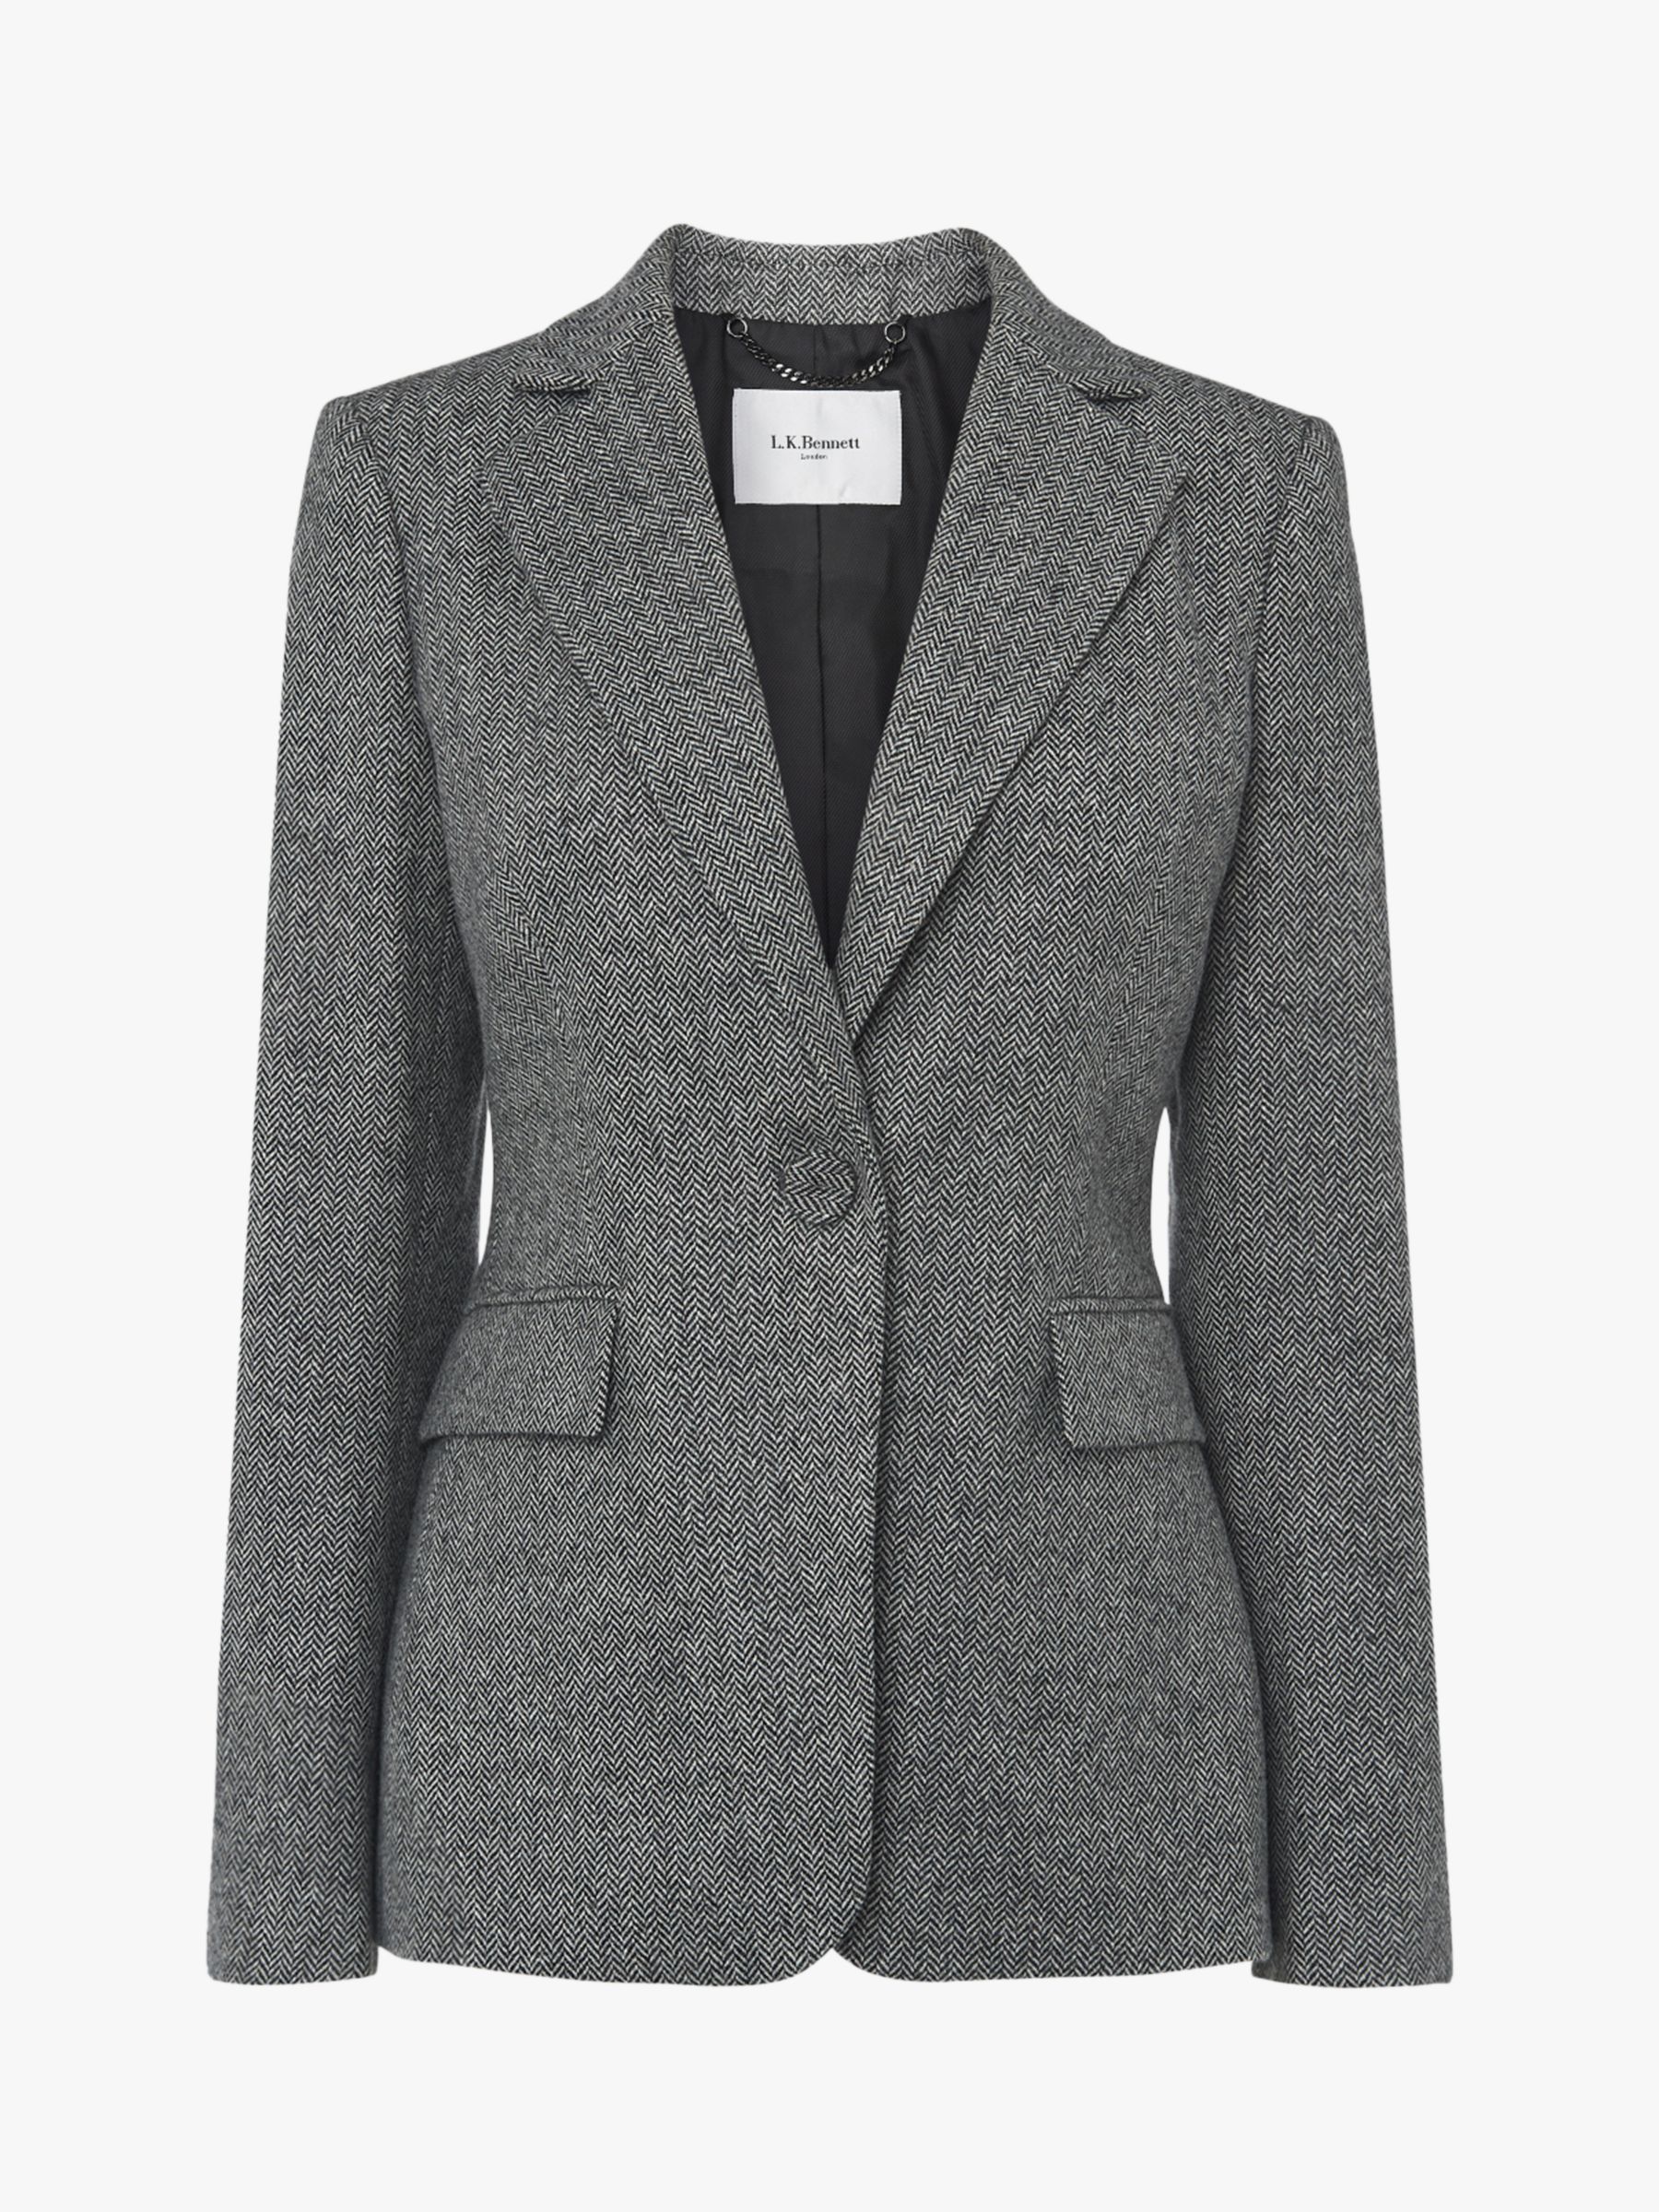 L.K.Bennett Frances Wool Jacket, Grey